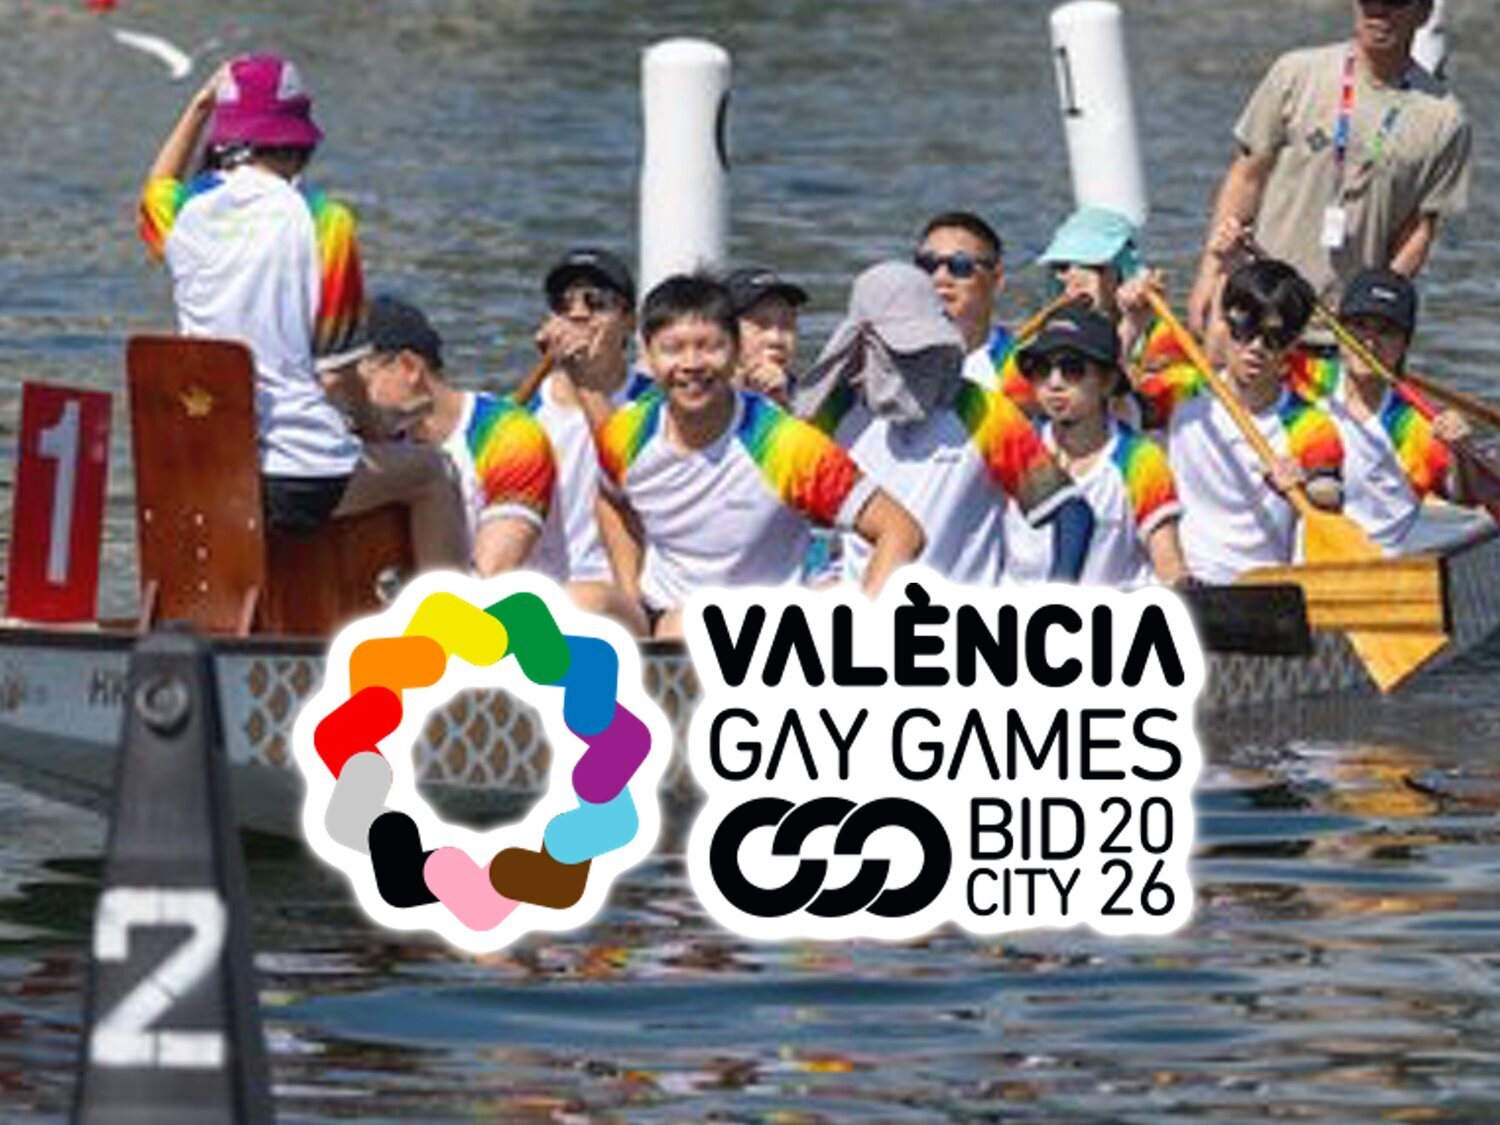 Los organizadores abandonan los Gay Games de Valencia por la deriva ultra de PP y VOX